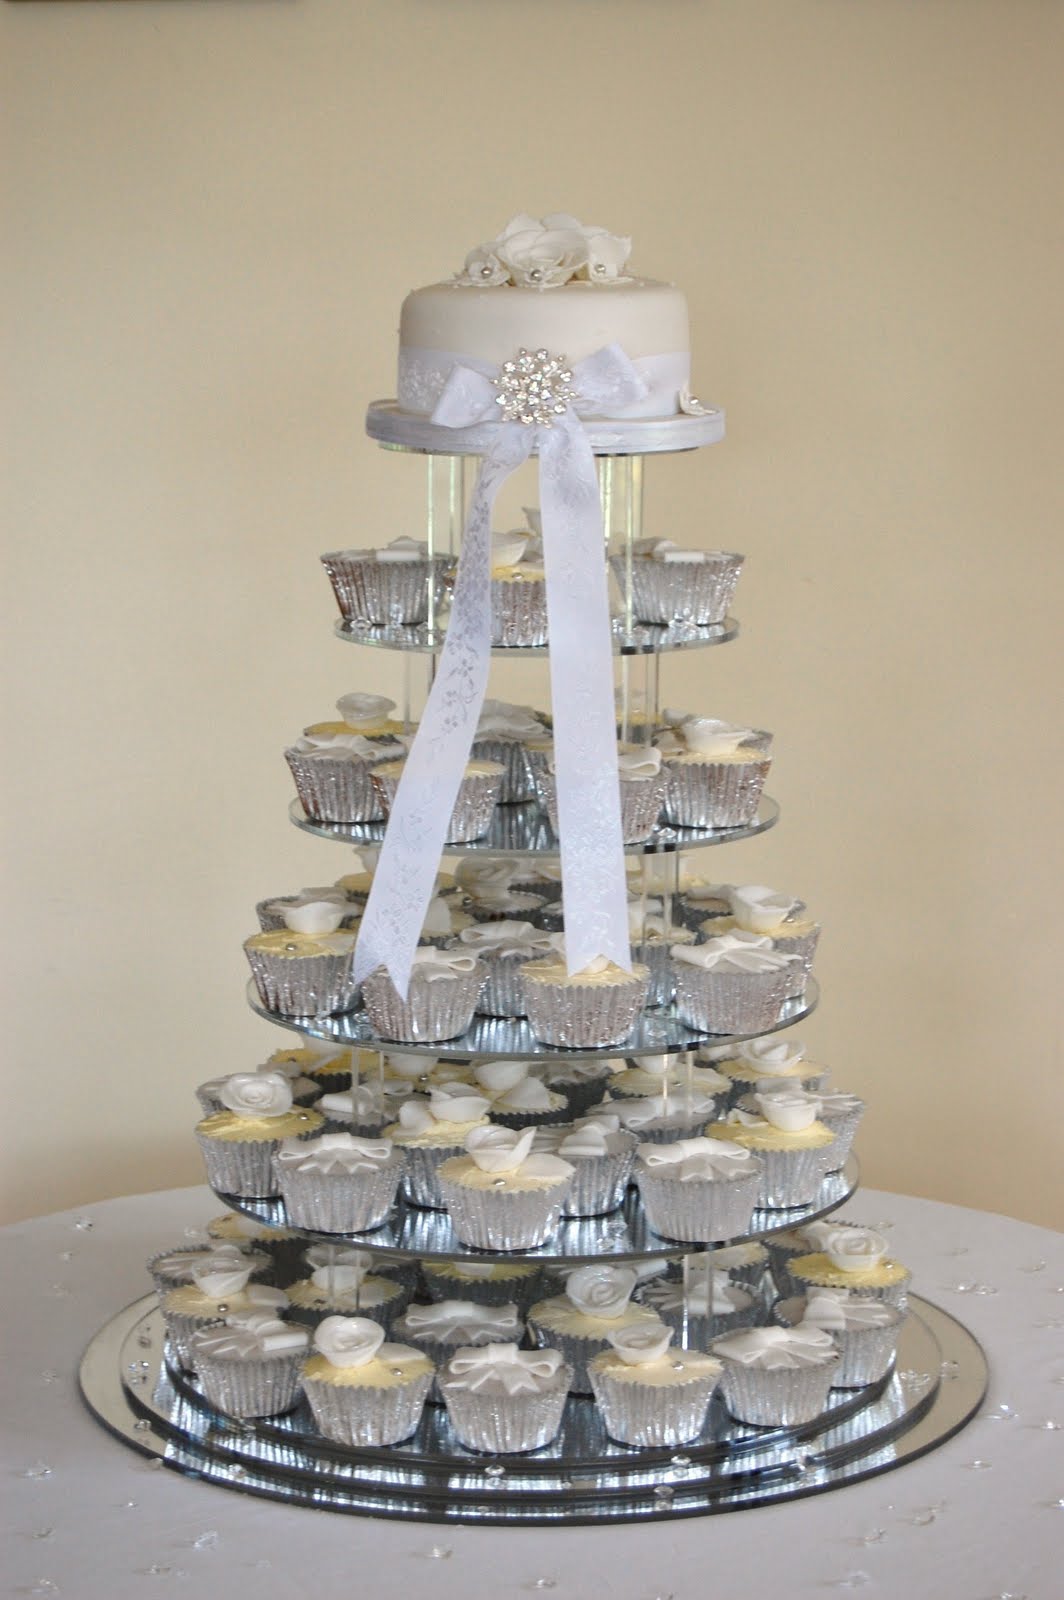 cupcake wedding cake from